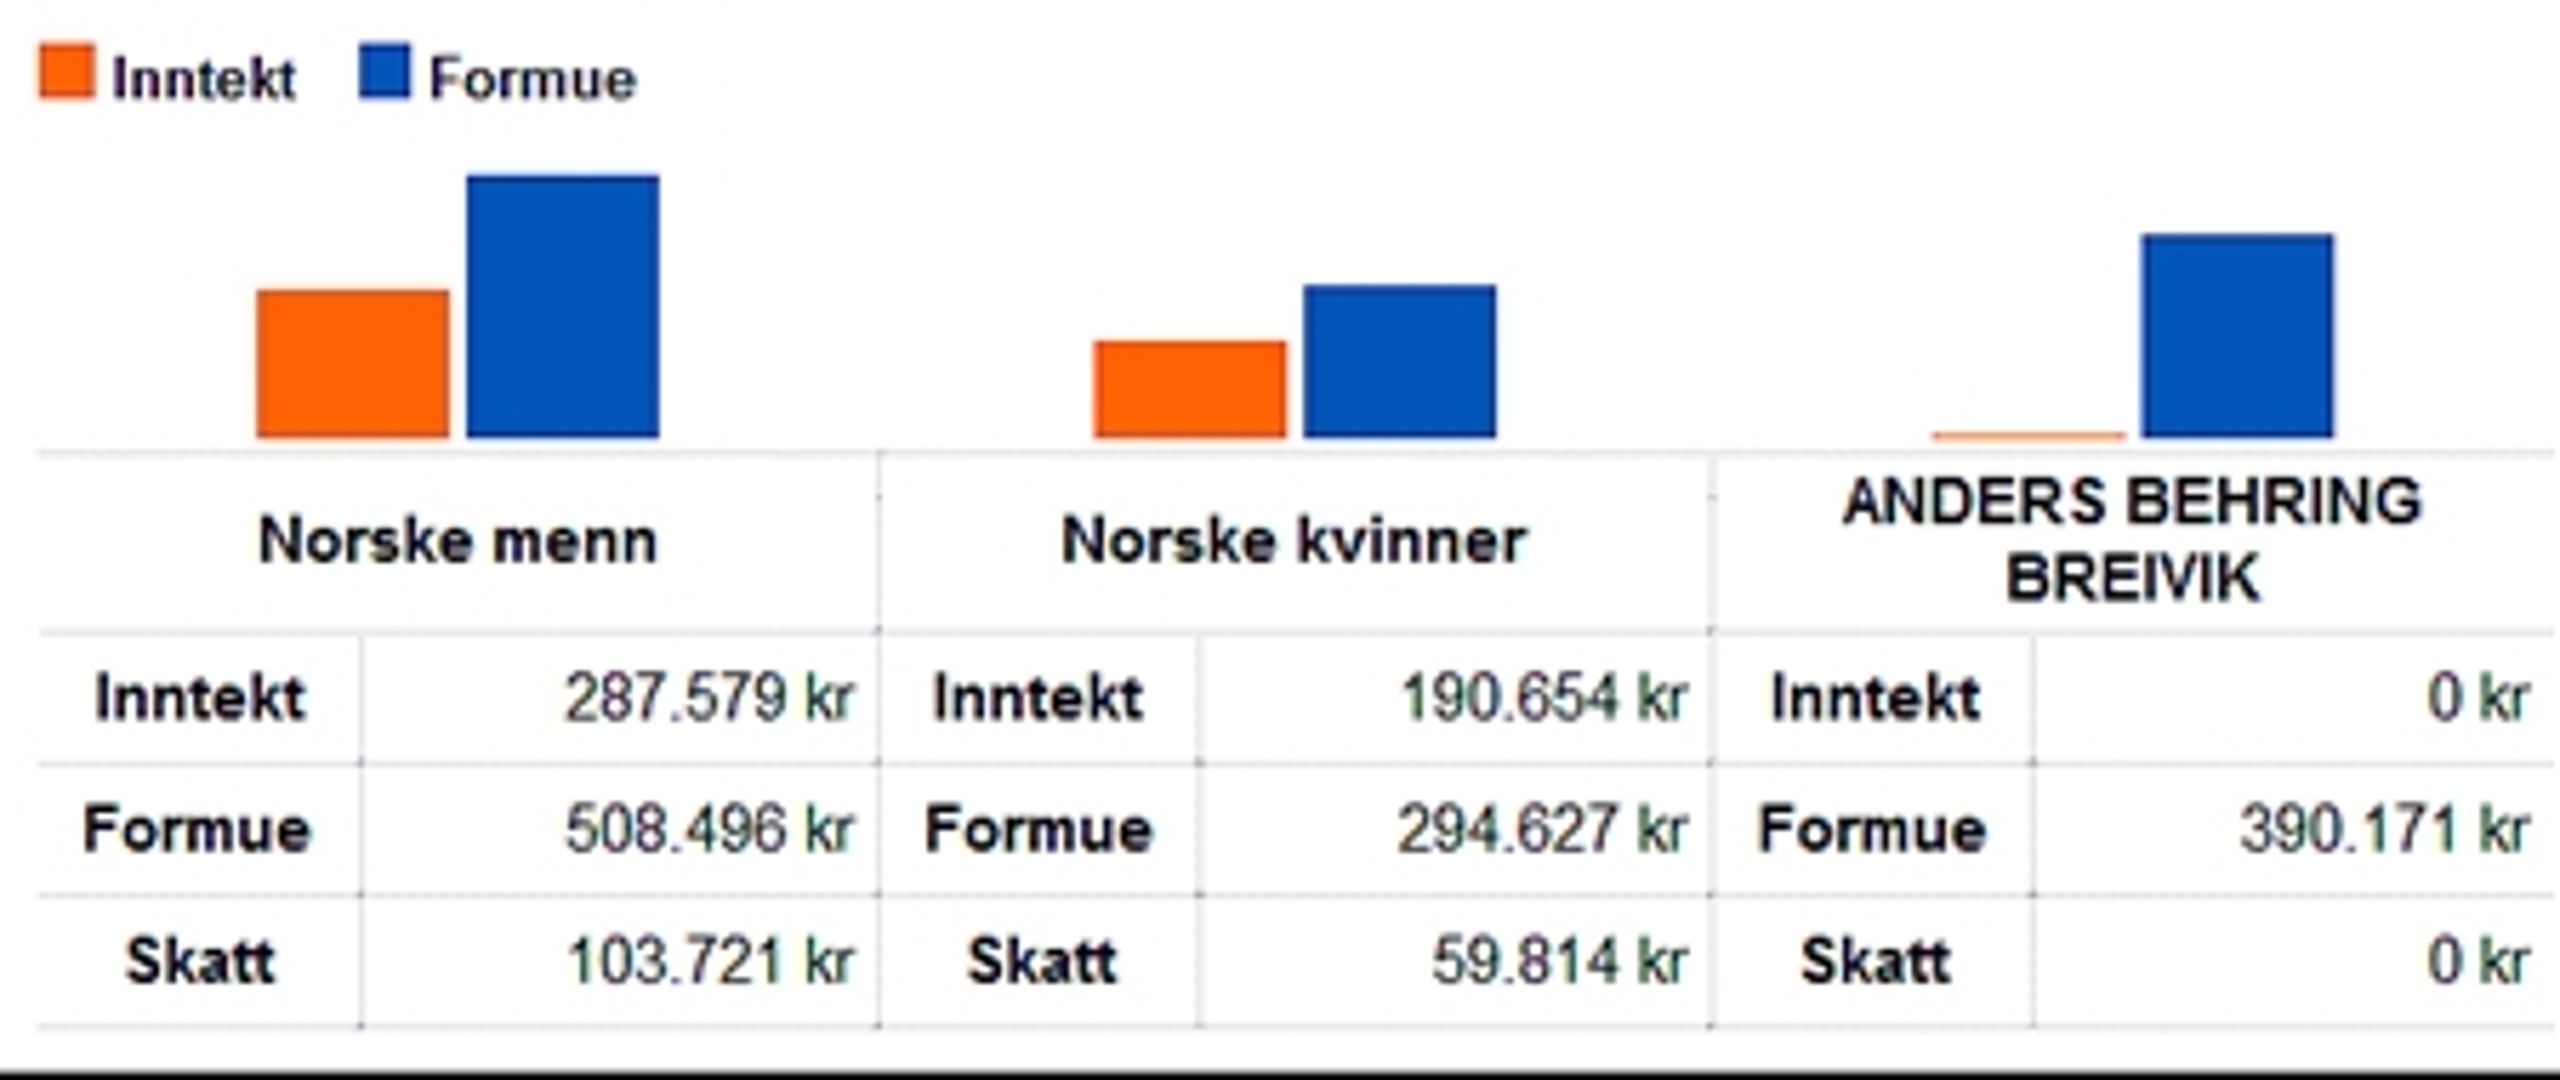 Den norske terrorist Anders Behring Breivik betalte ikke en krone i skat i 2009, fremgår det af de officielle skattelister, der også viser norske mænds og kvinders gennemsnitlige skatte-, indtægts- og formueforhold.